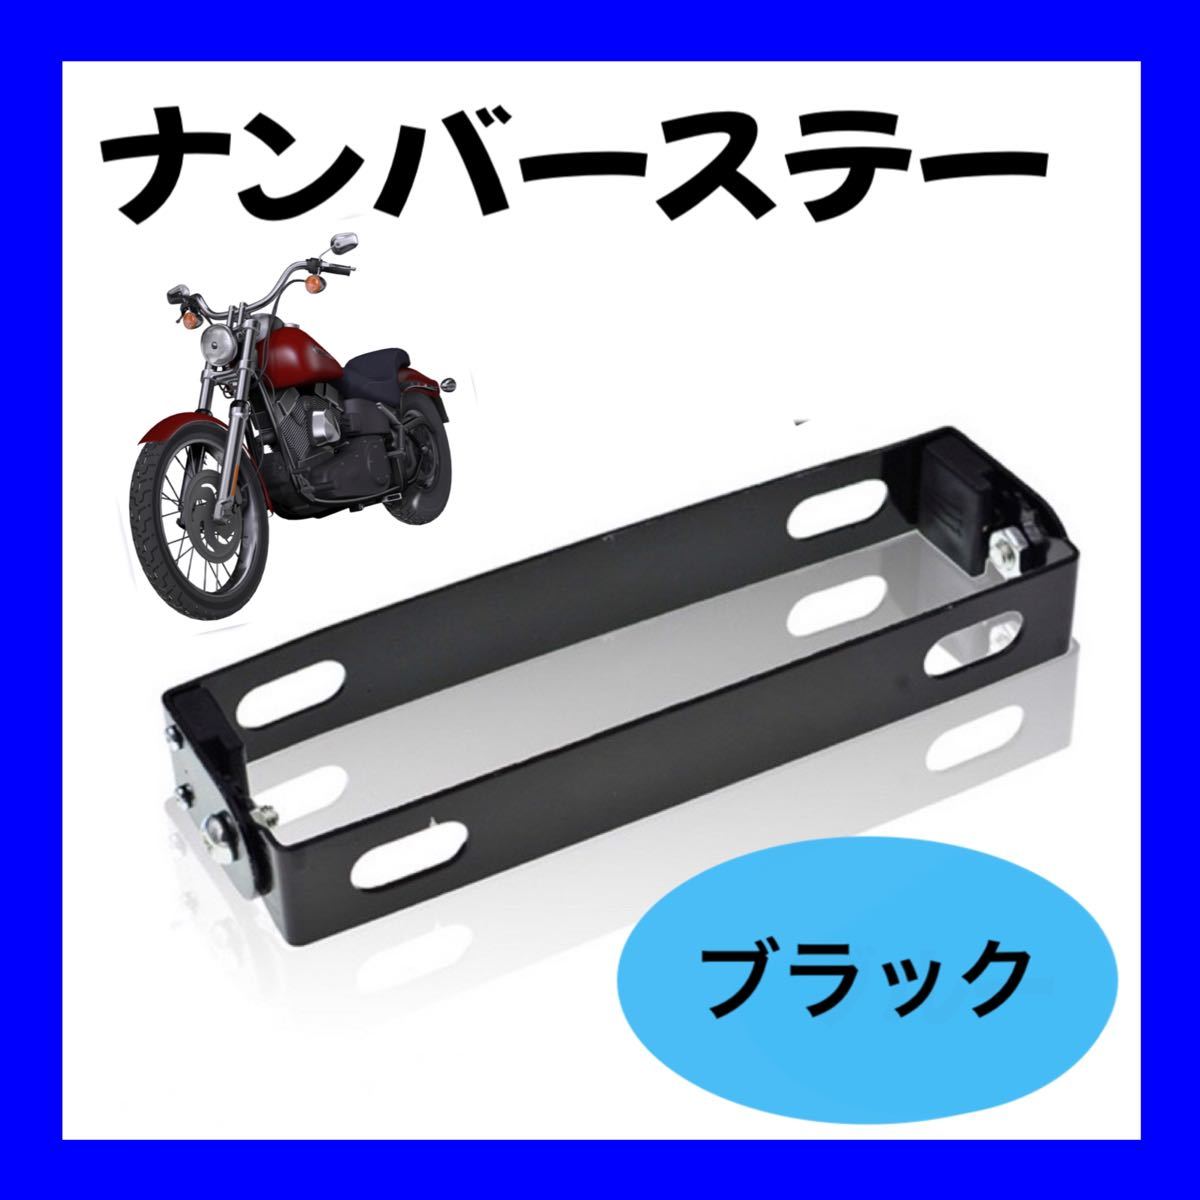 ナンバープレート 角度調節 ブラック バイク 原付 ブラケット 可変式 ステー